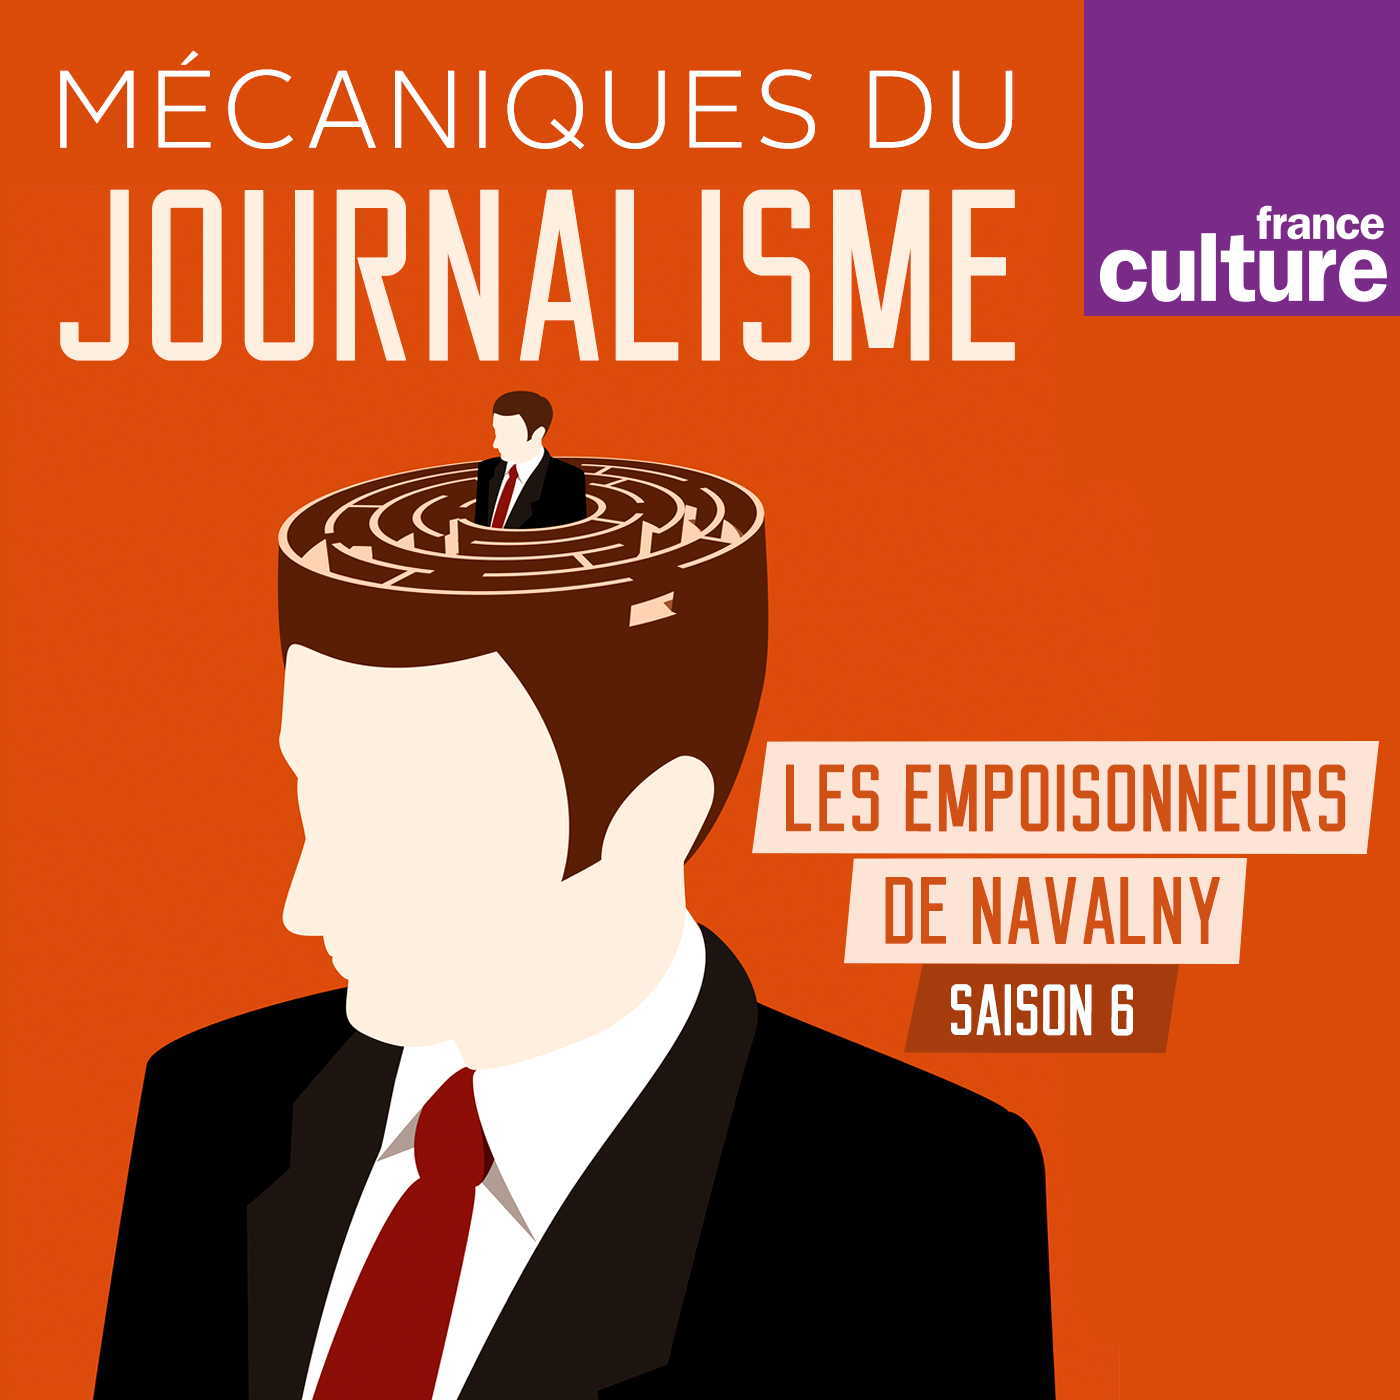 FC_Podcast_MecaniqueJournalisme_1400X1400.png